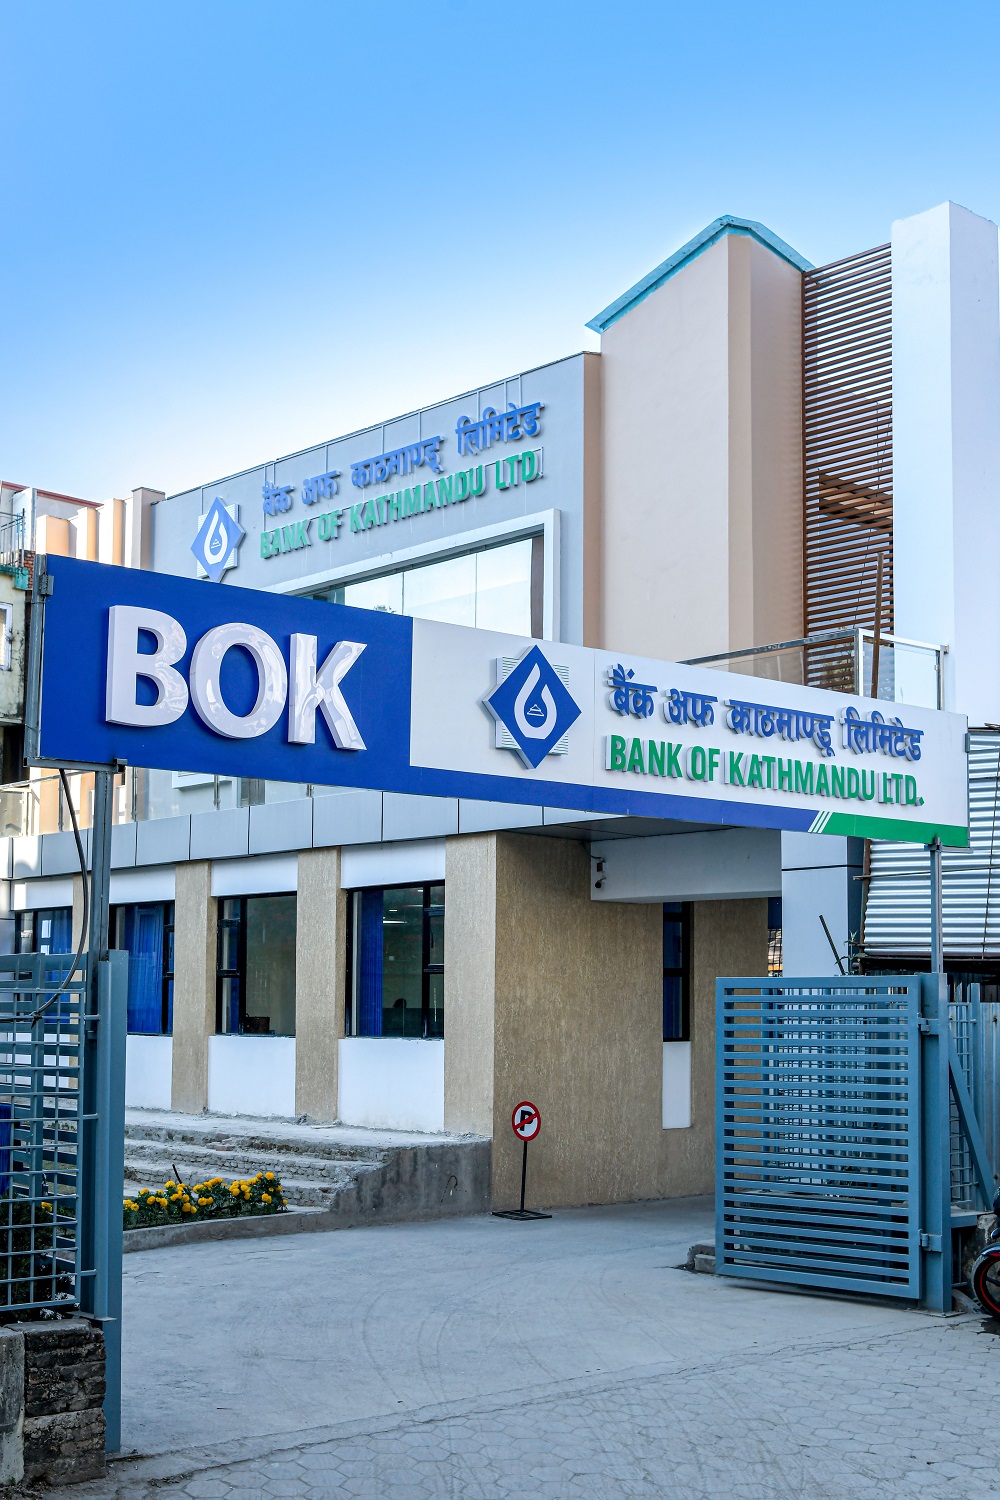 बैंक अफ काठमाण्डूको हेल्पलाईन सेवा